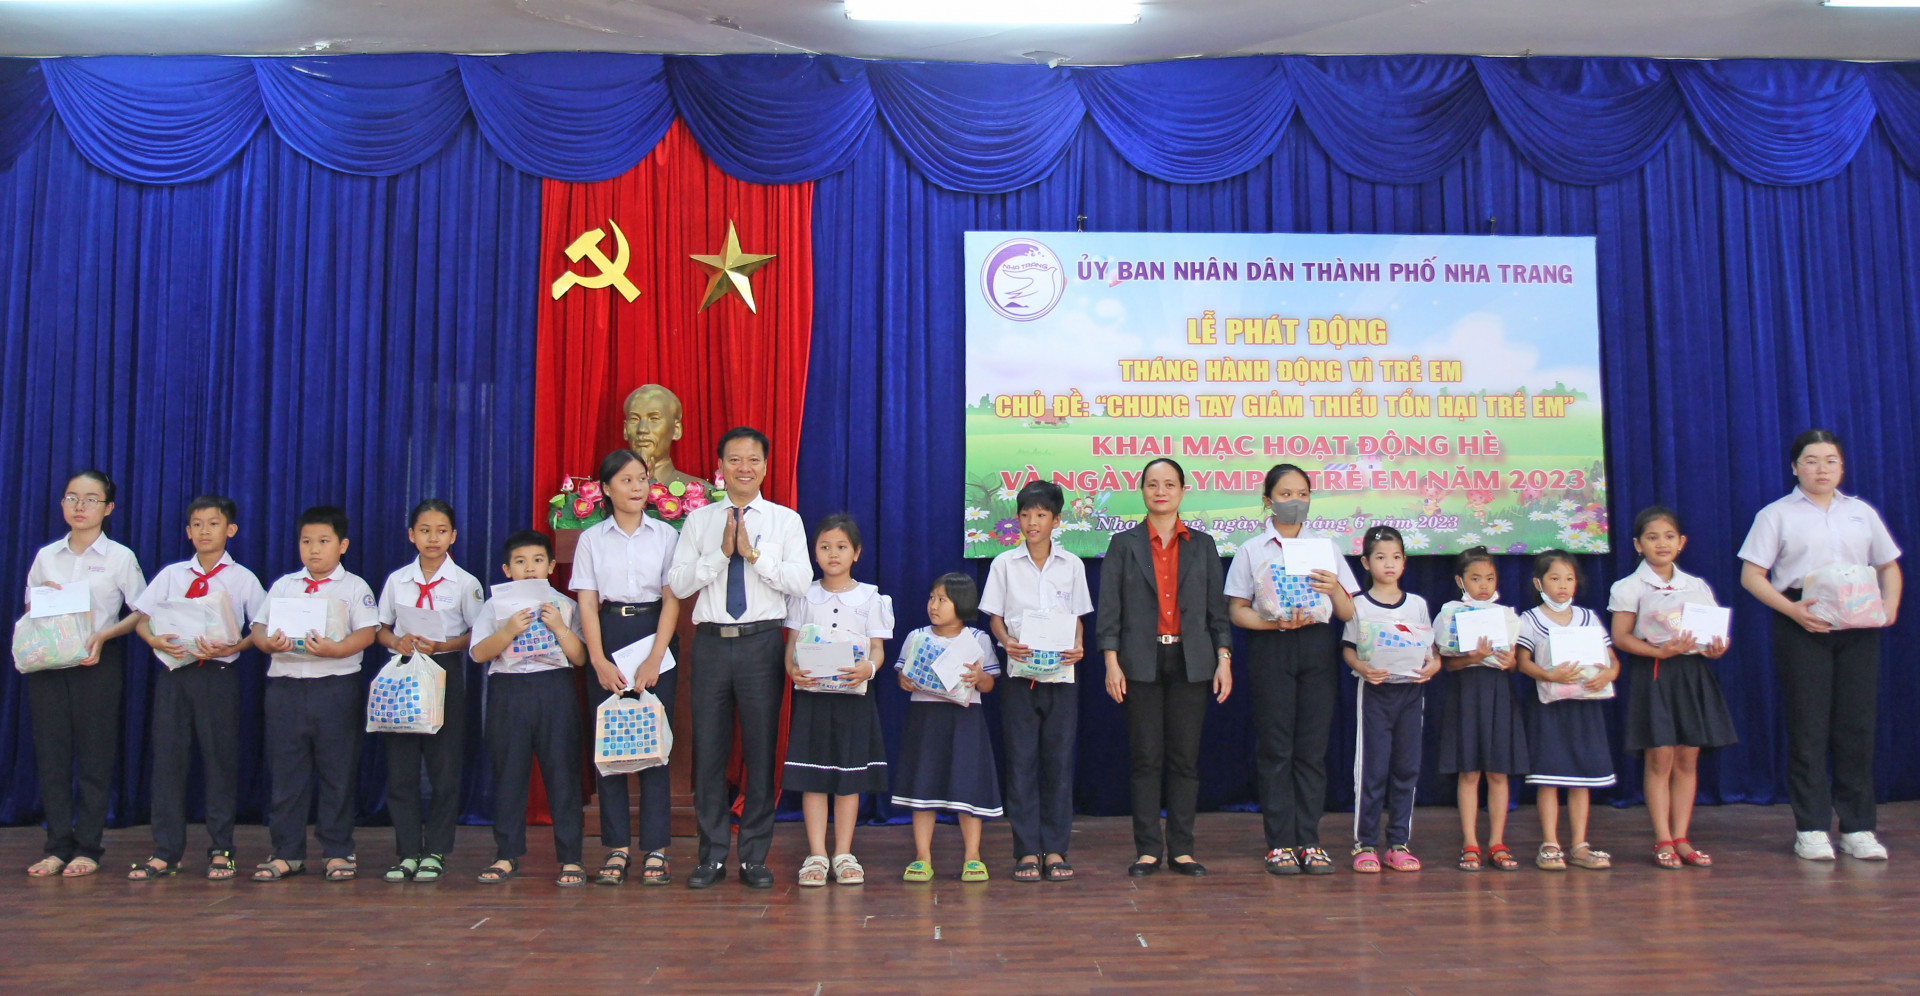 Lãnh đạo UBND TP. Nha Trang và Phòng Lao động – Thương binh và Xã hội thành phố trao học bổng cho học sinh.